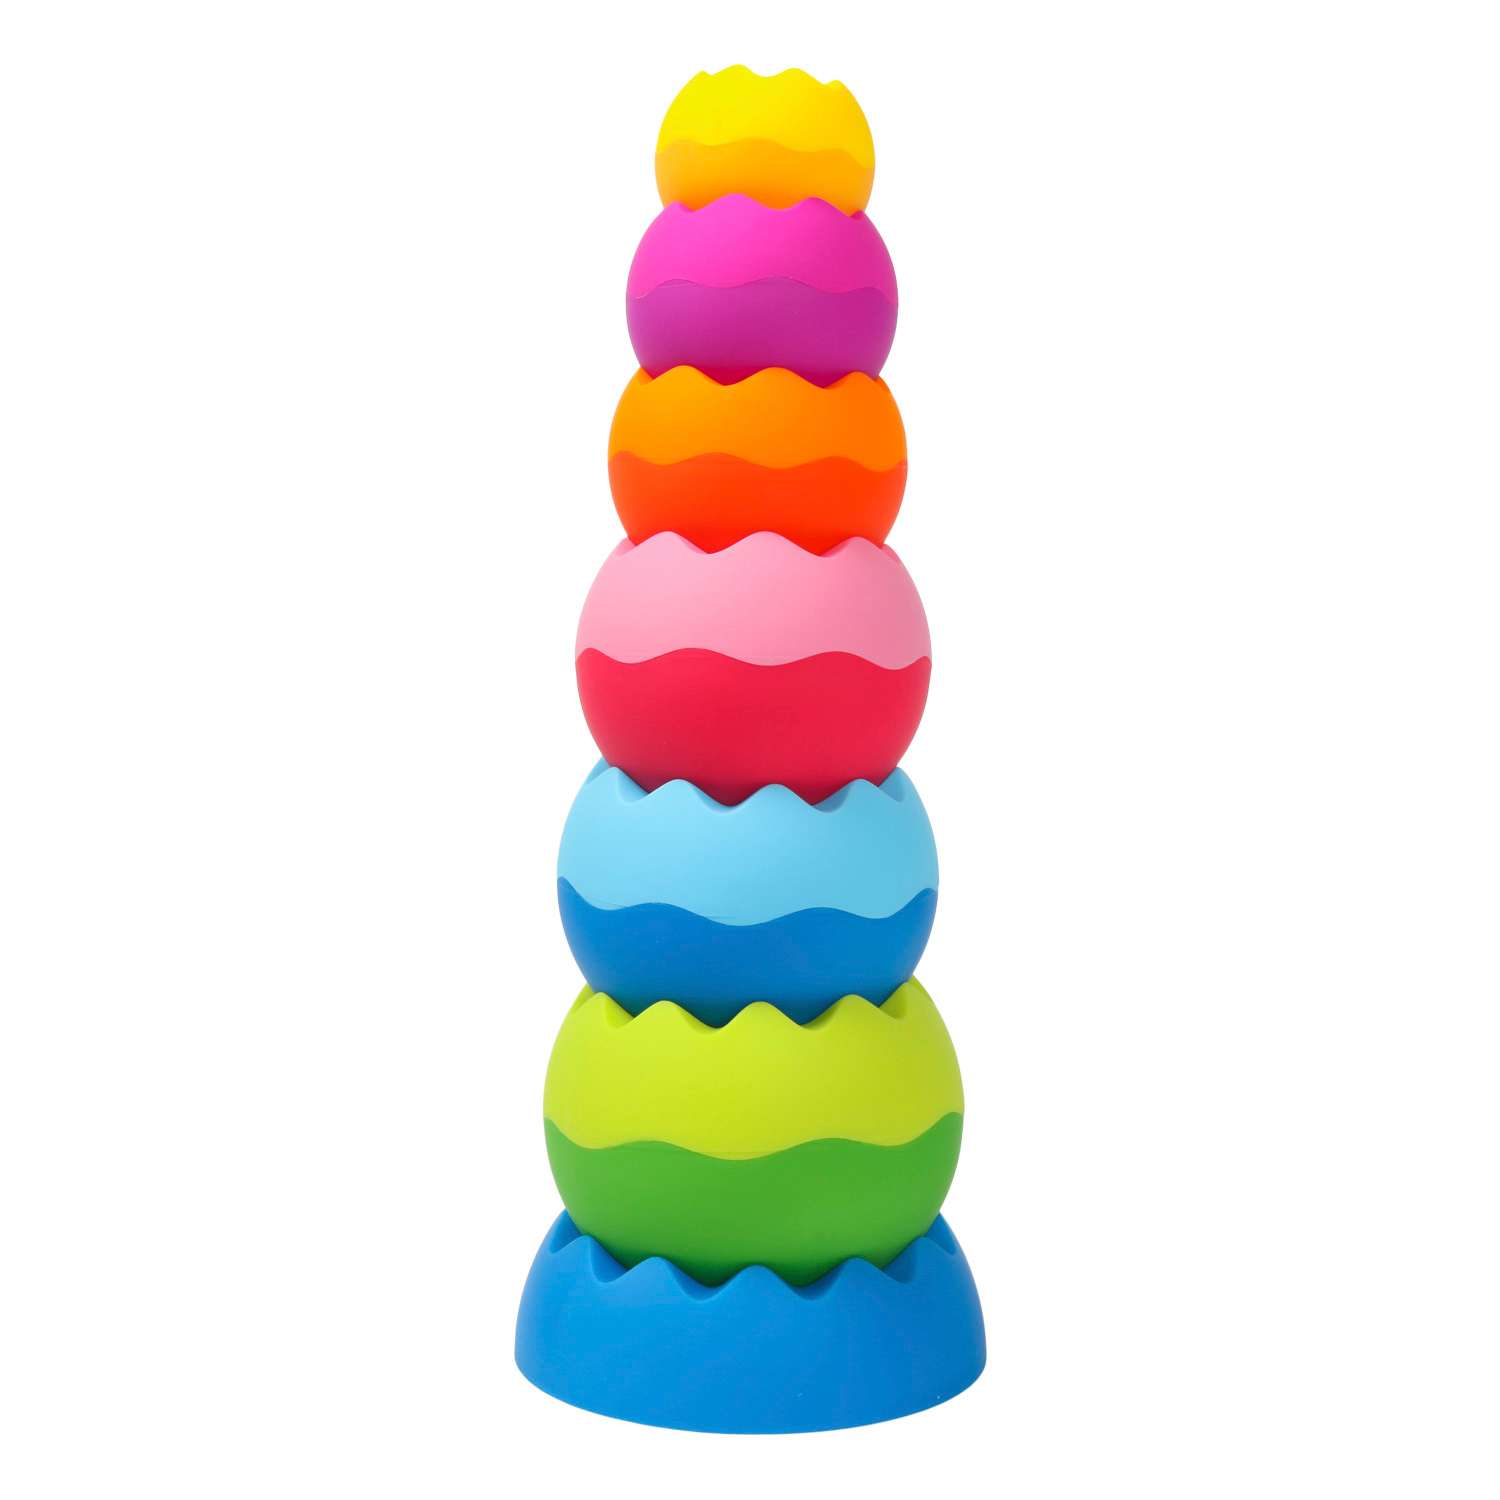 Пирамидка Fat Brain Toy 7деталей Разноцветный F070ML - фото 1